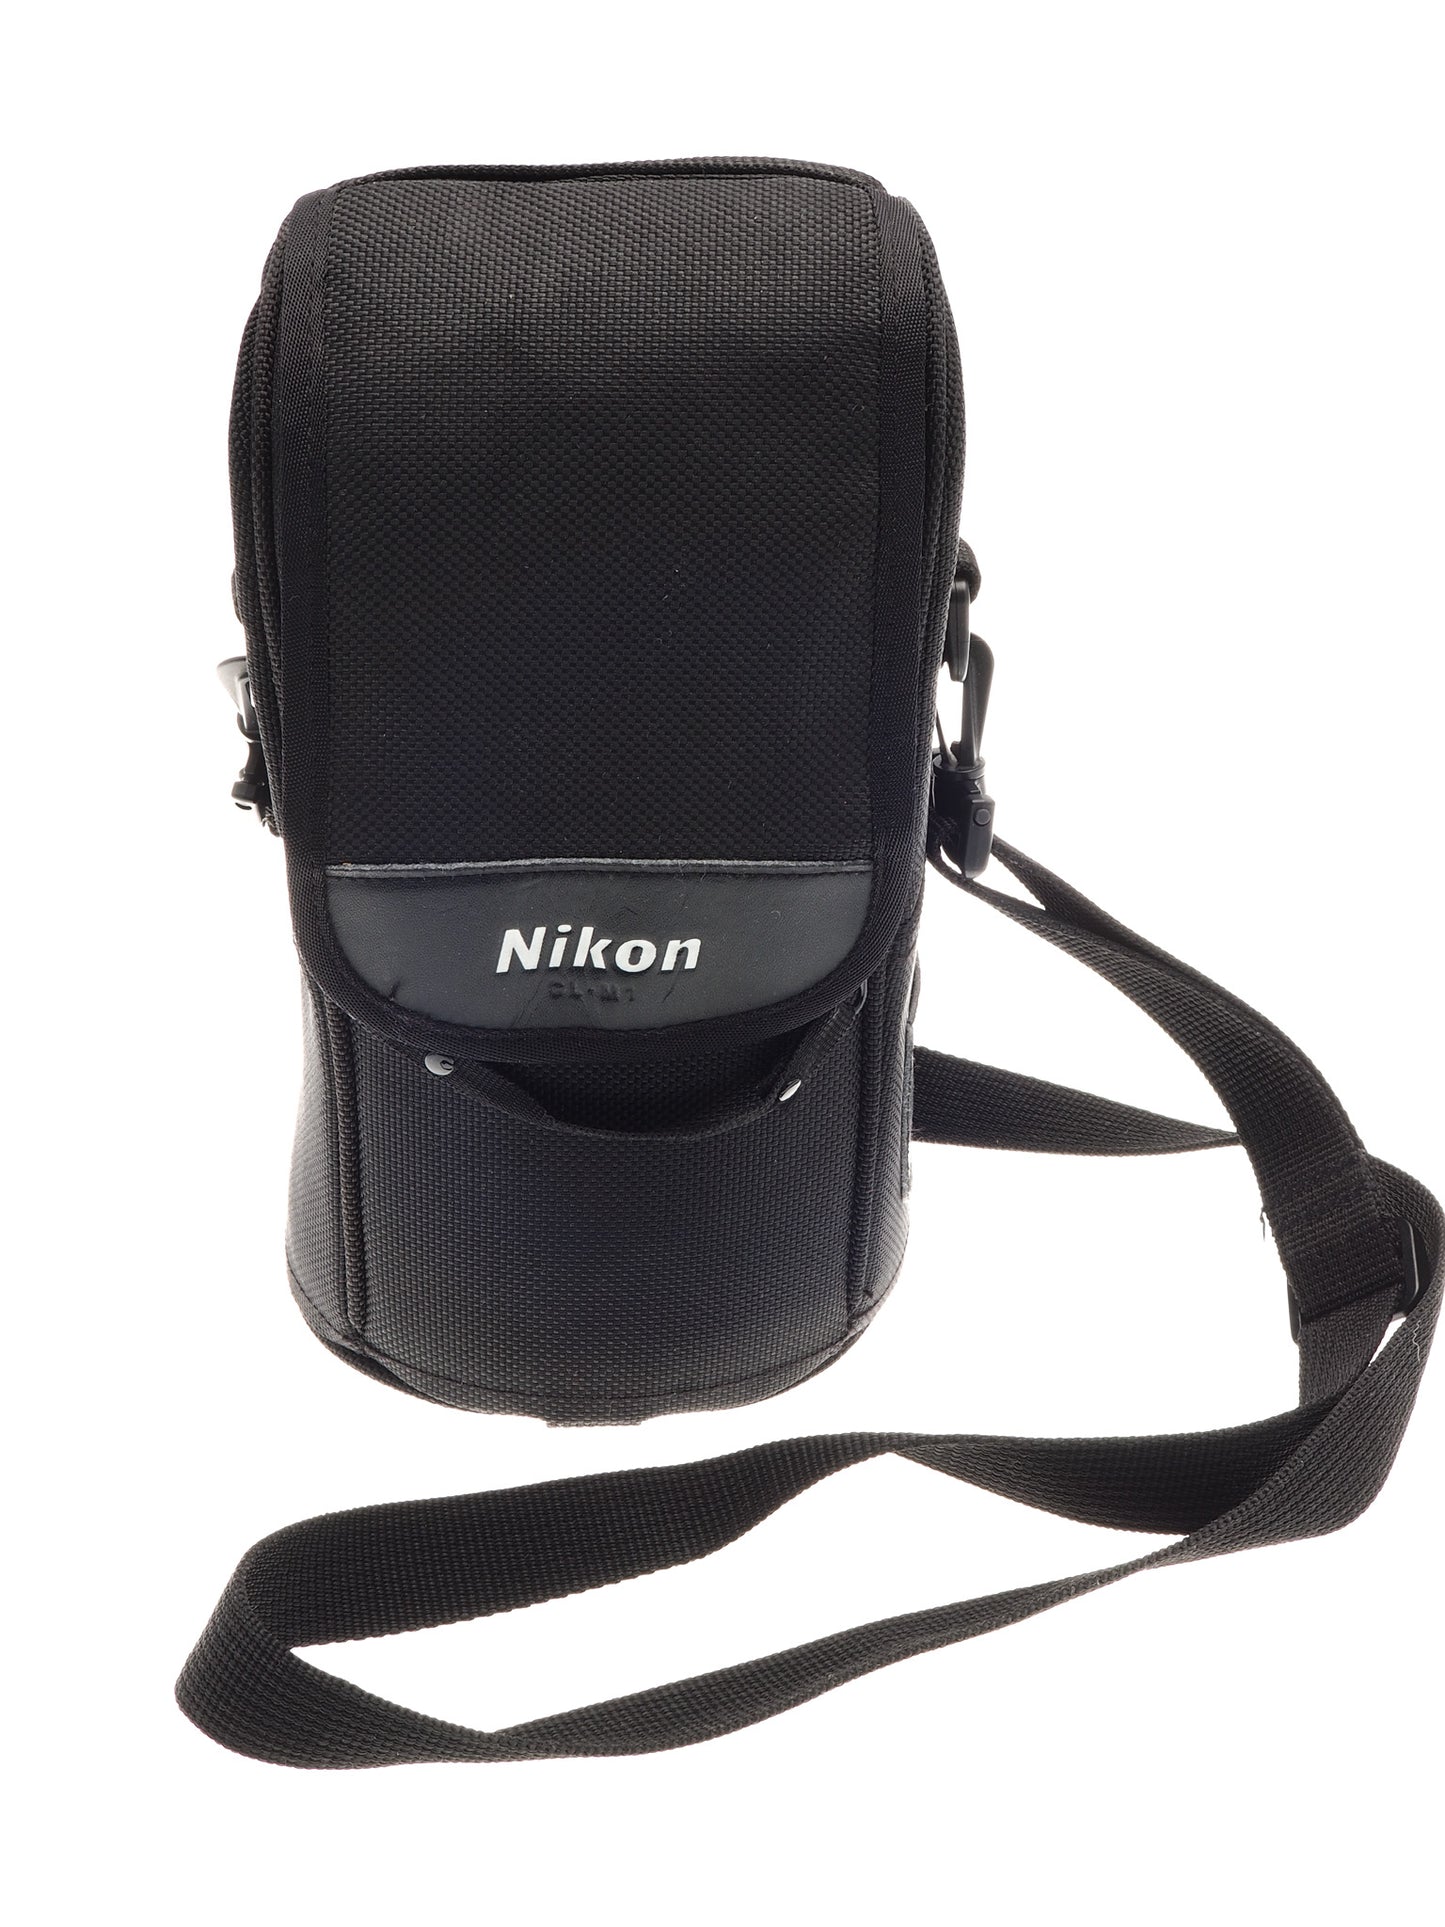 Nikon CL-M1 Lens Case - Accessory